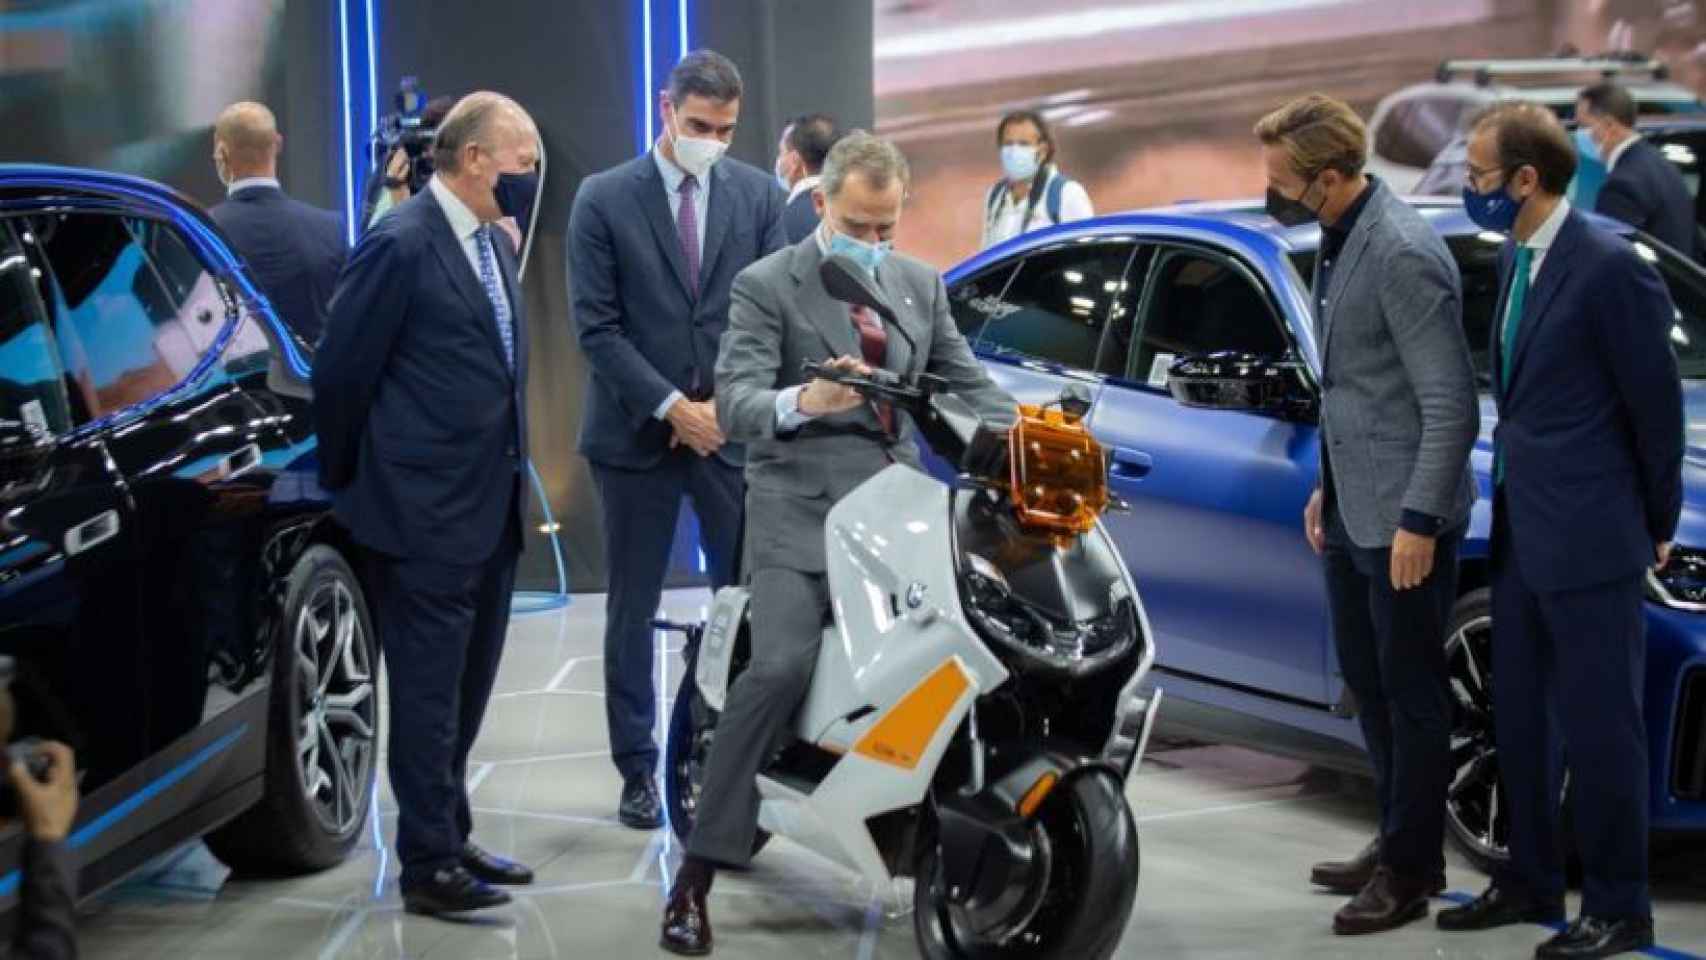 Sánchez observa cómo Felipe VI se desenvuelve sobre una moto, en el Salón del Automóvil.